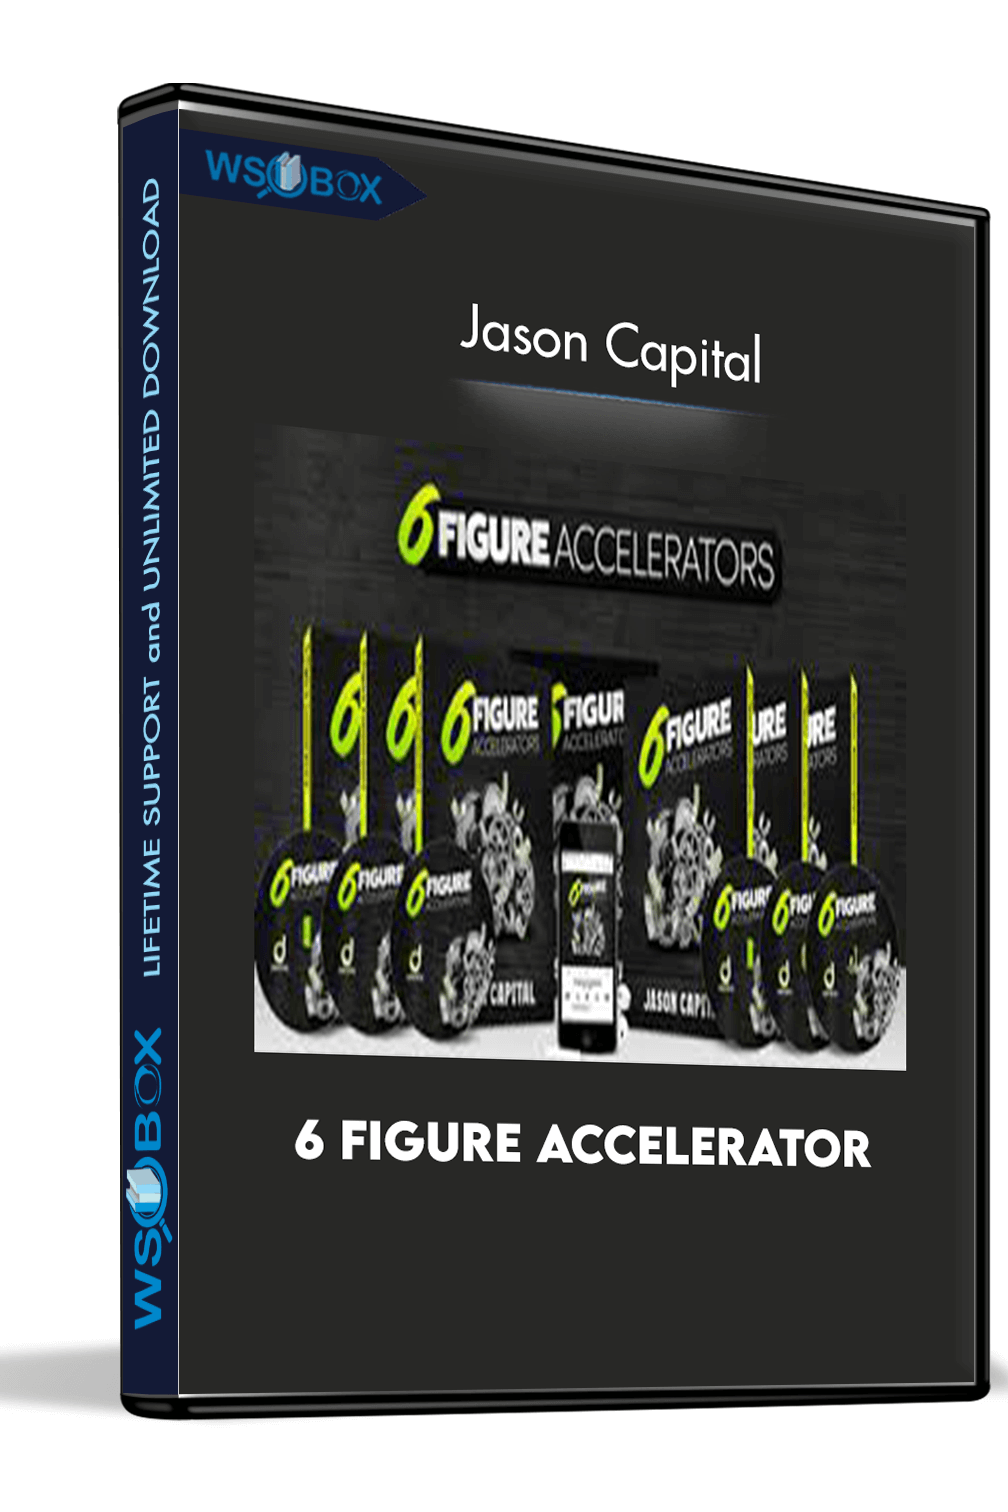 6 Figure Accelerator – Jason Capital